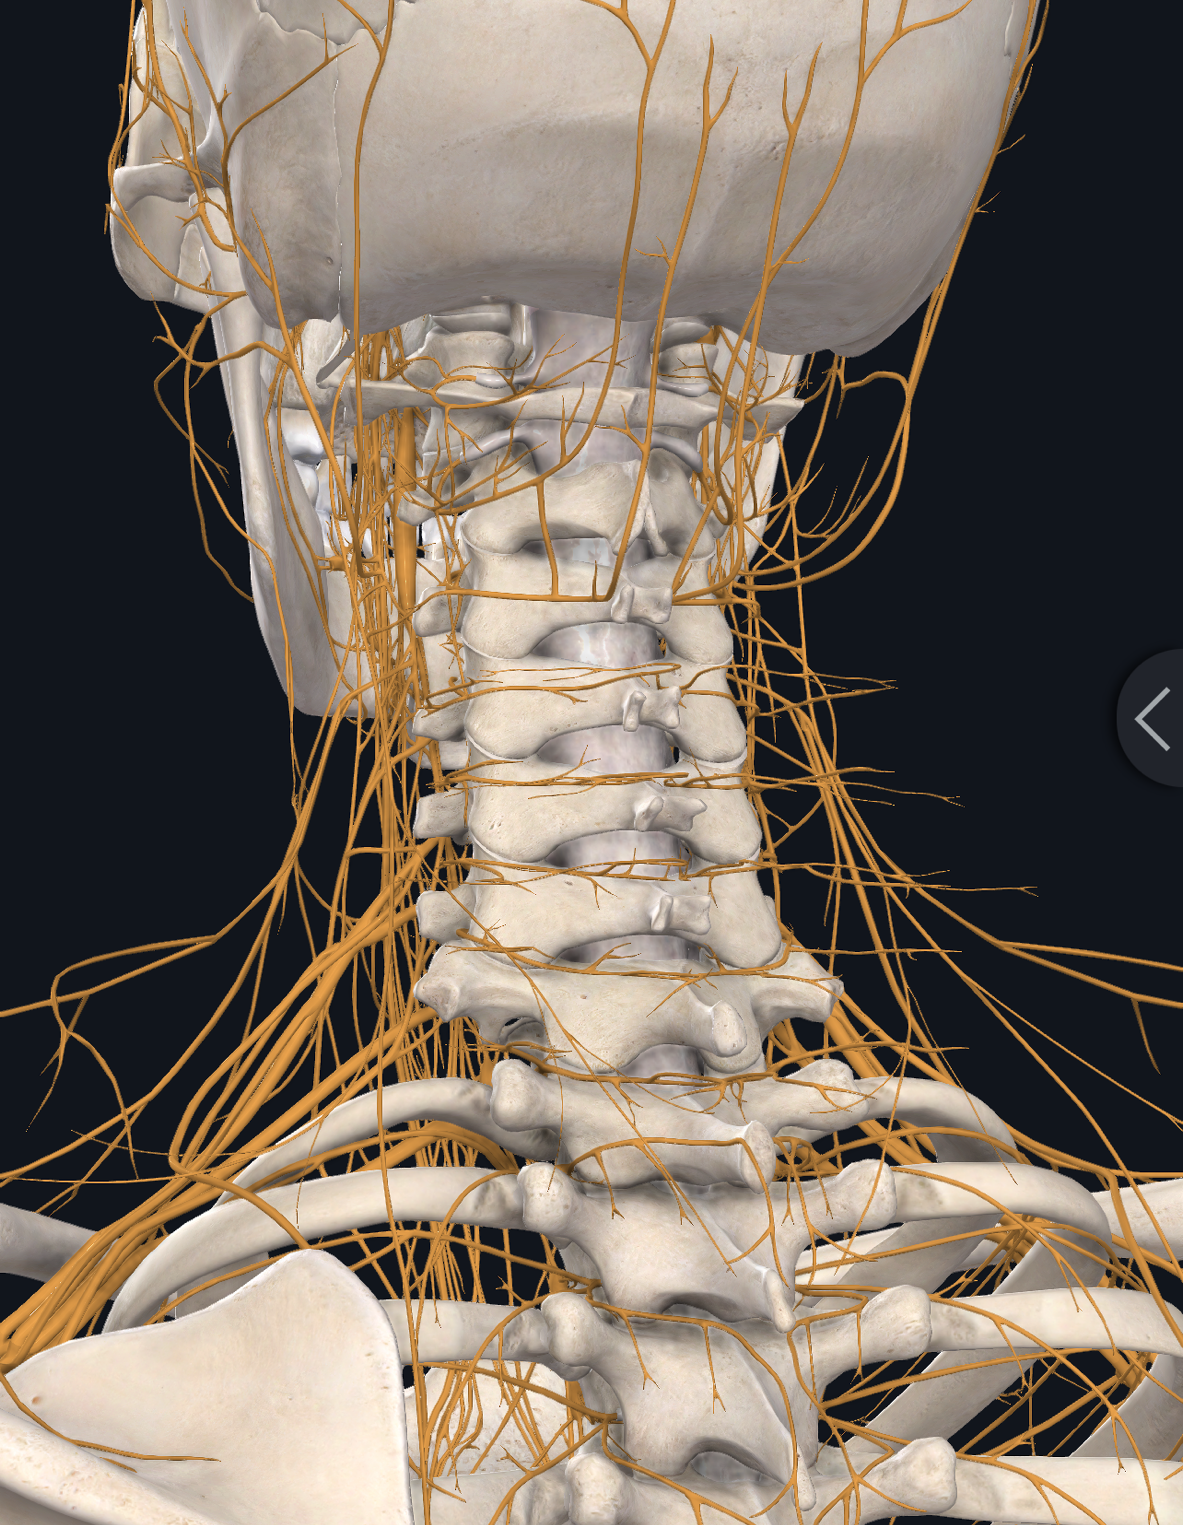 颈椎神经分布图高清图图片